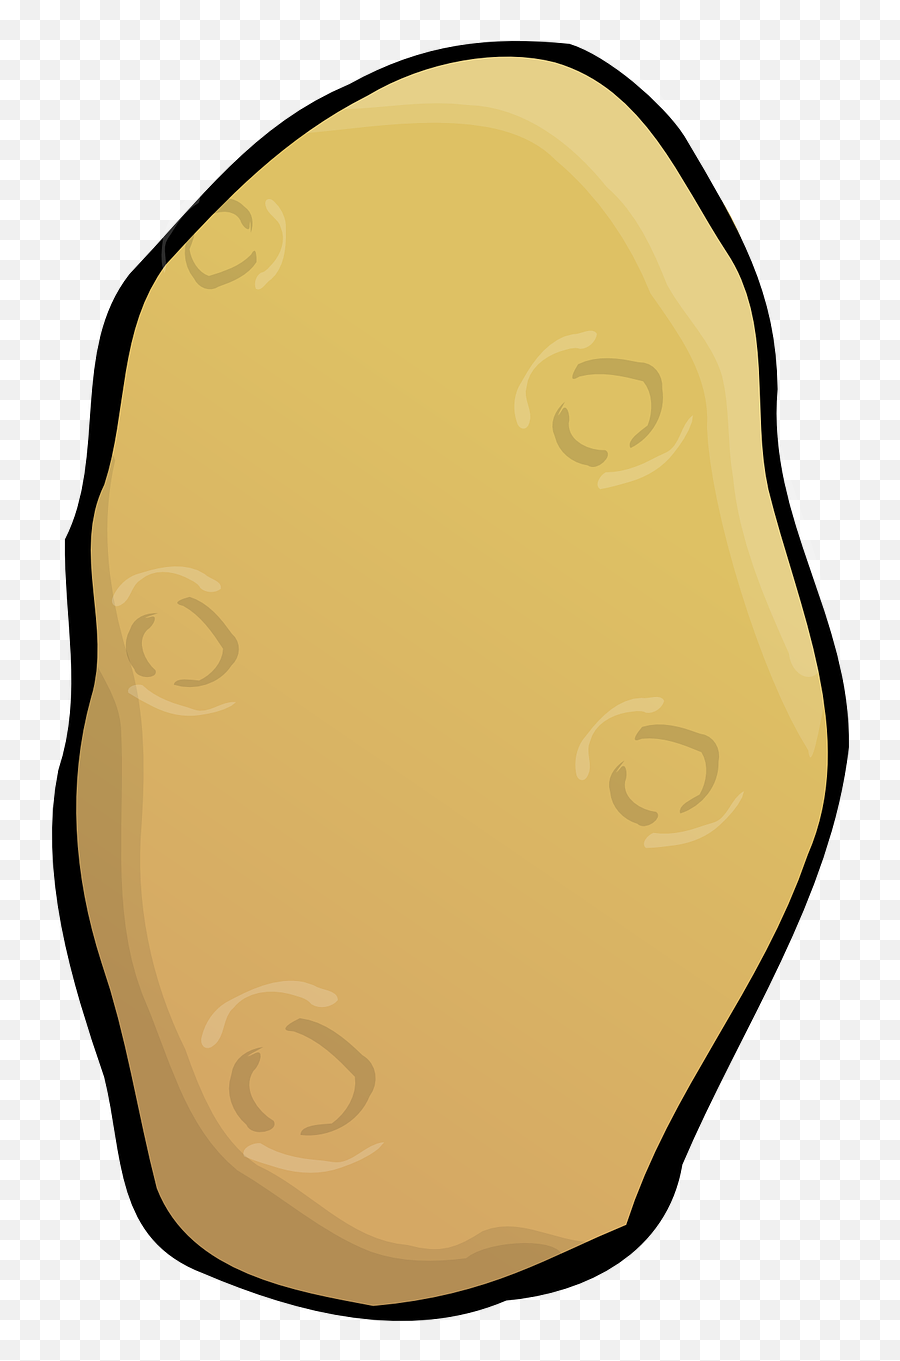 Potato Tuber Vegetable Food Healthy - Potato Png Cartoon Emoji,Potato Chip Emoji